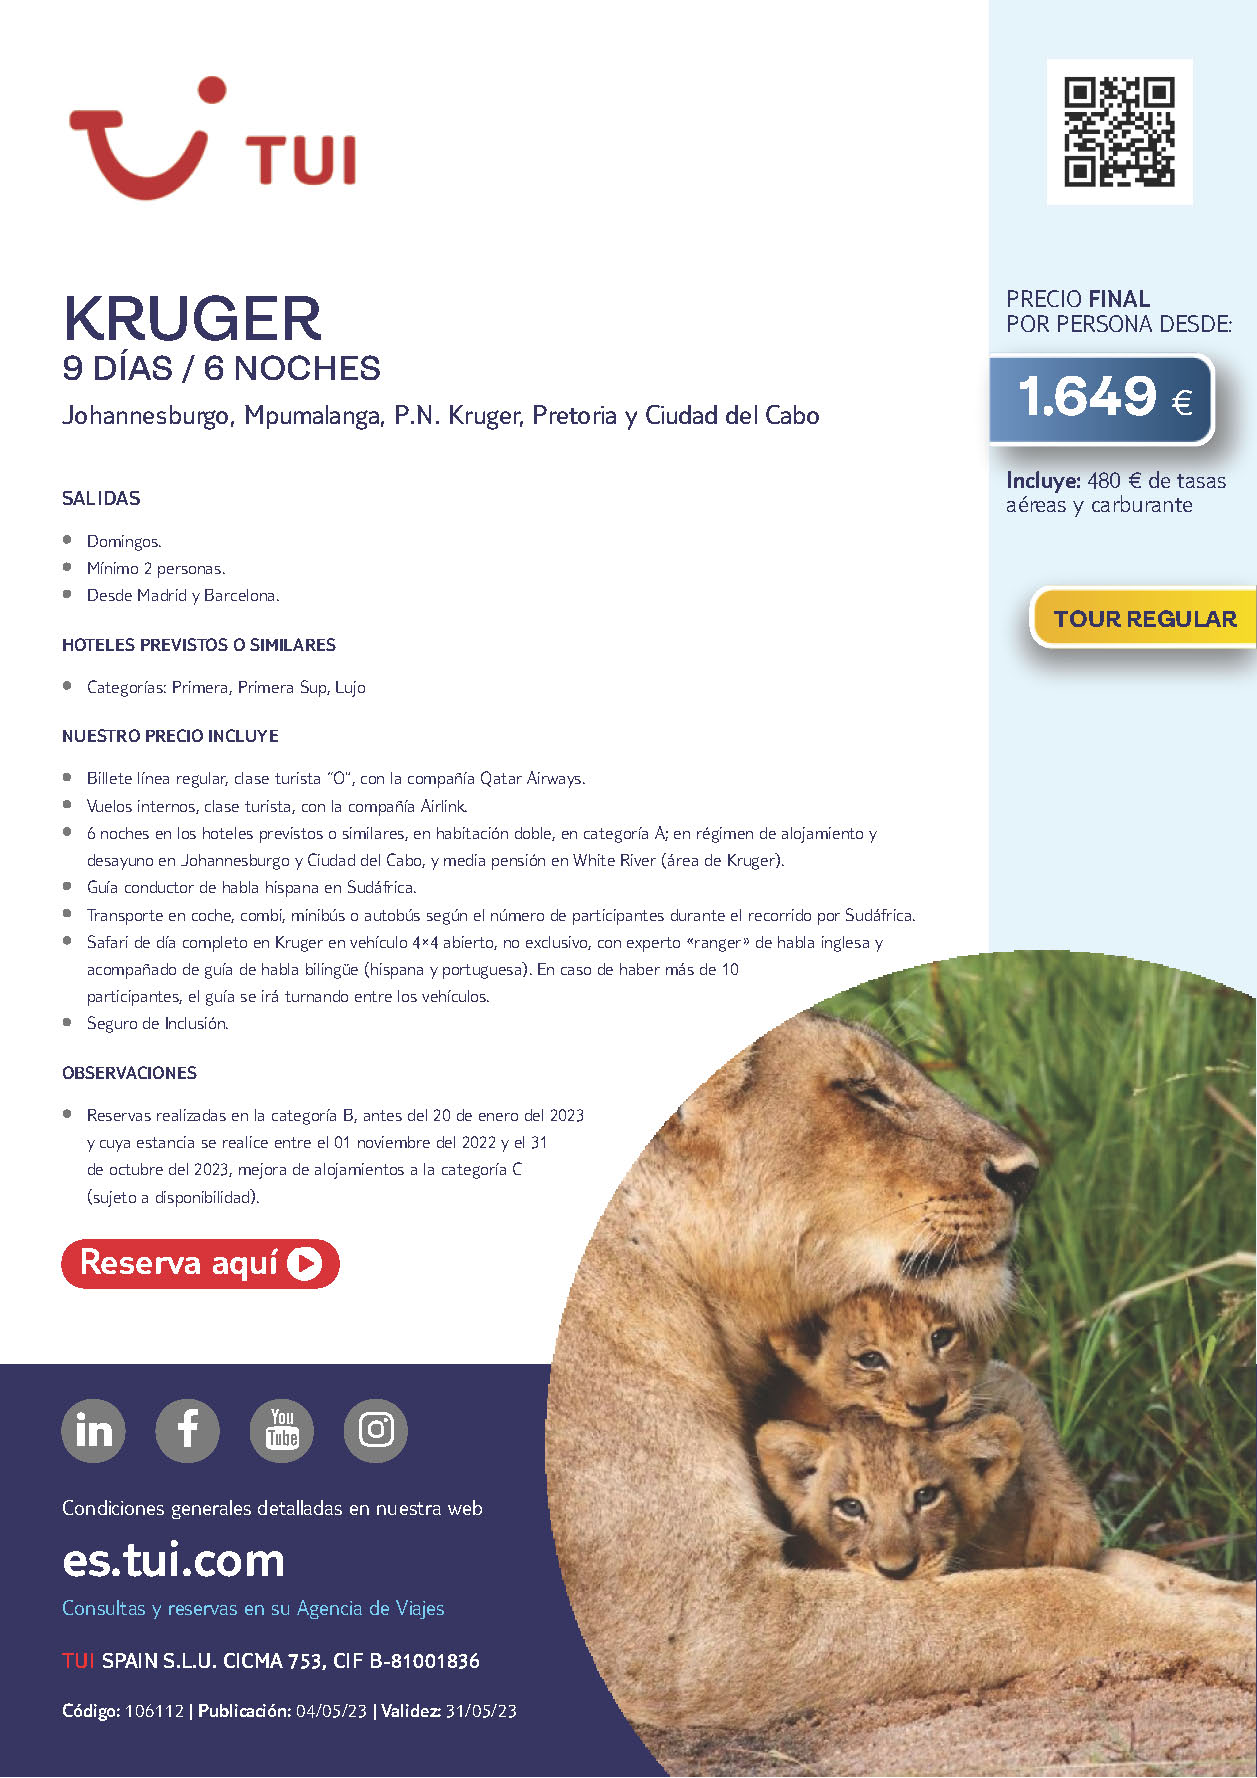 Oferta TUI Sudafrica Safari Kruger 9 dias 6 noches Verano 2023 salidas desde Barcelona y Madrid vuelos Qatar Airways